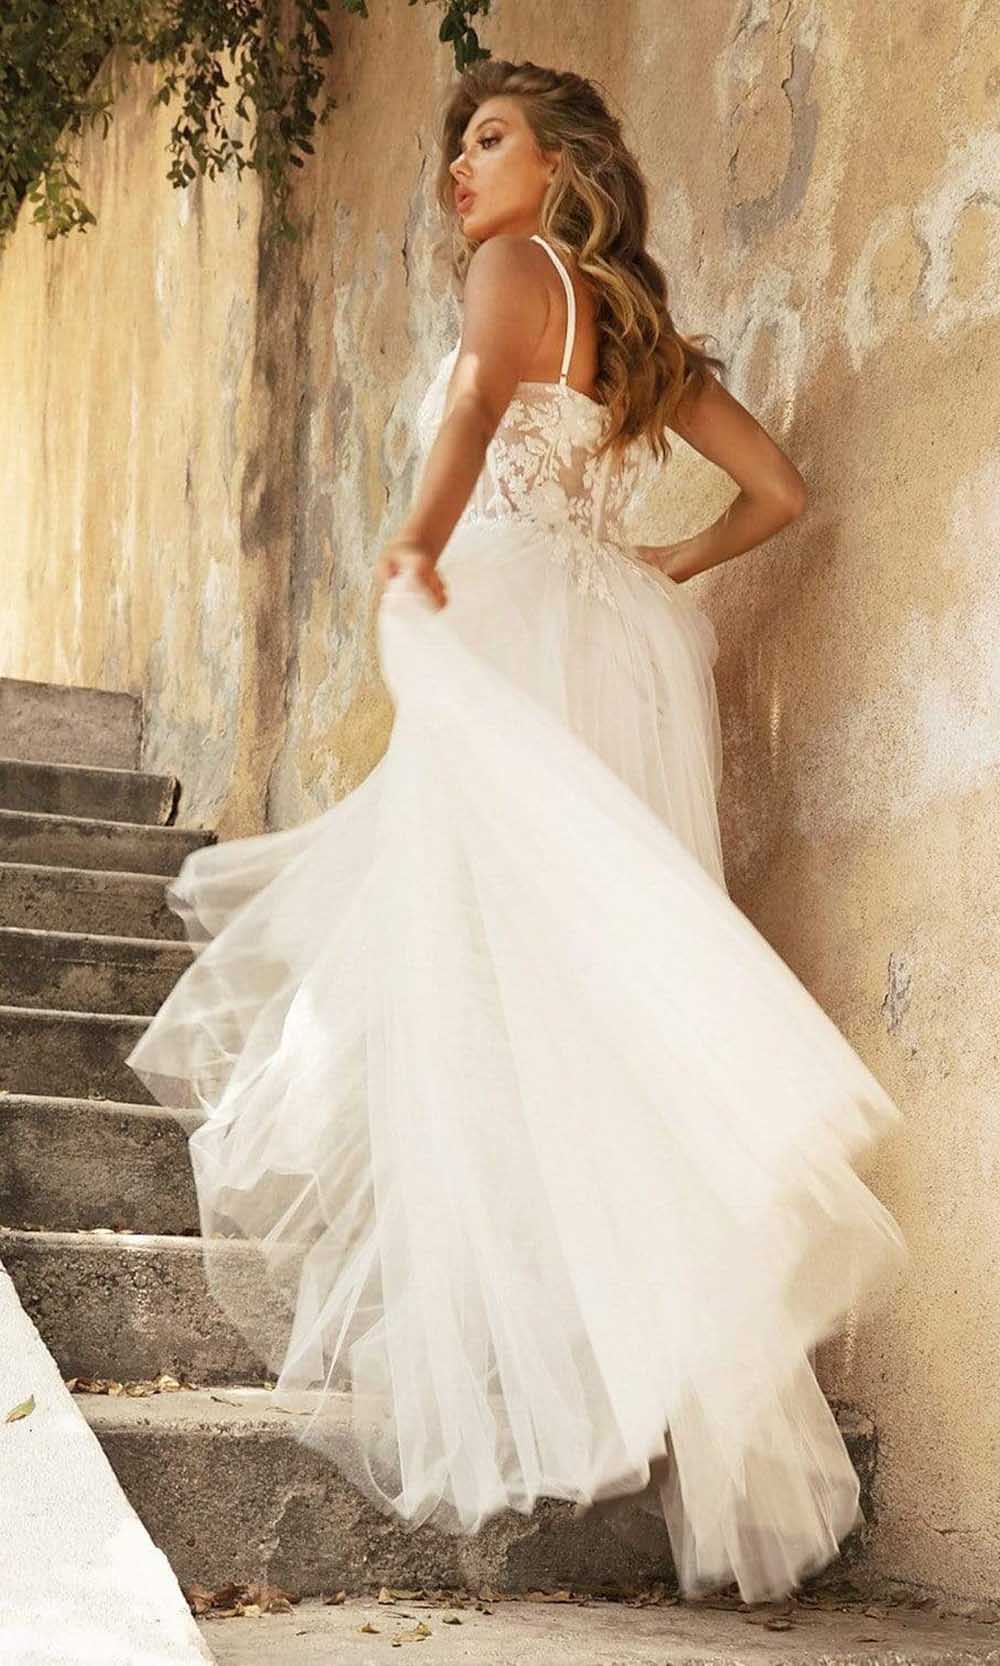 Cinderella Divine White & Silver Sequin Stripe A-Line Bridal Gown